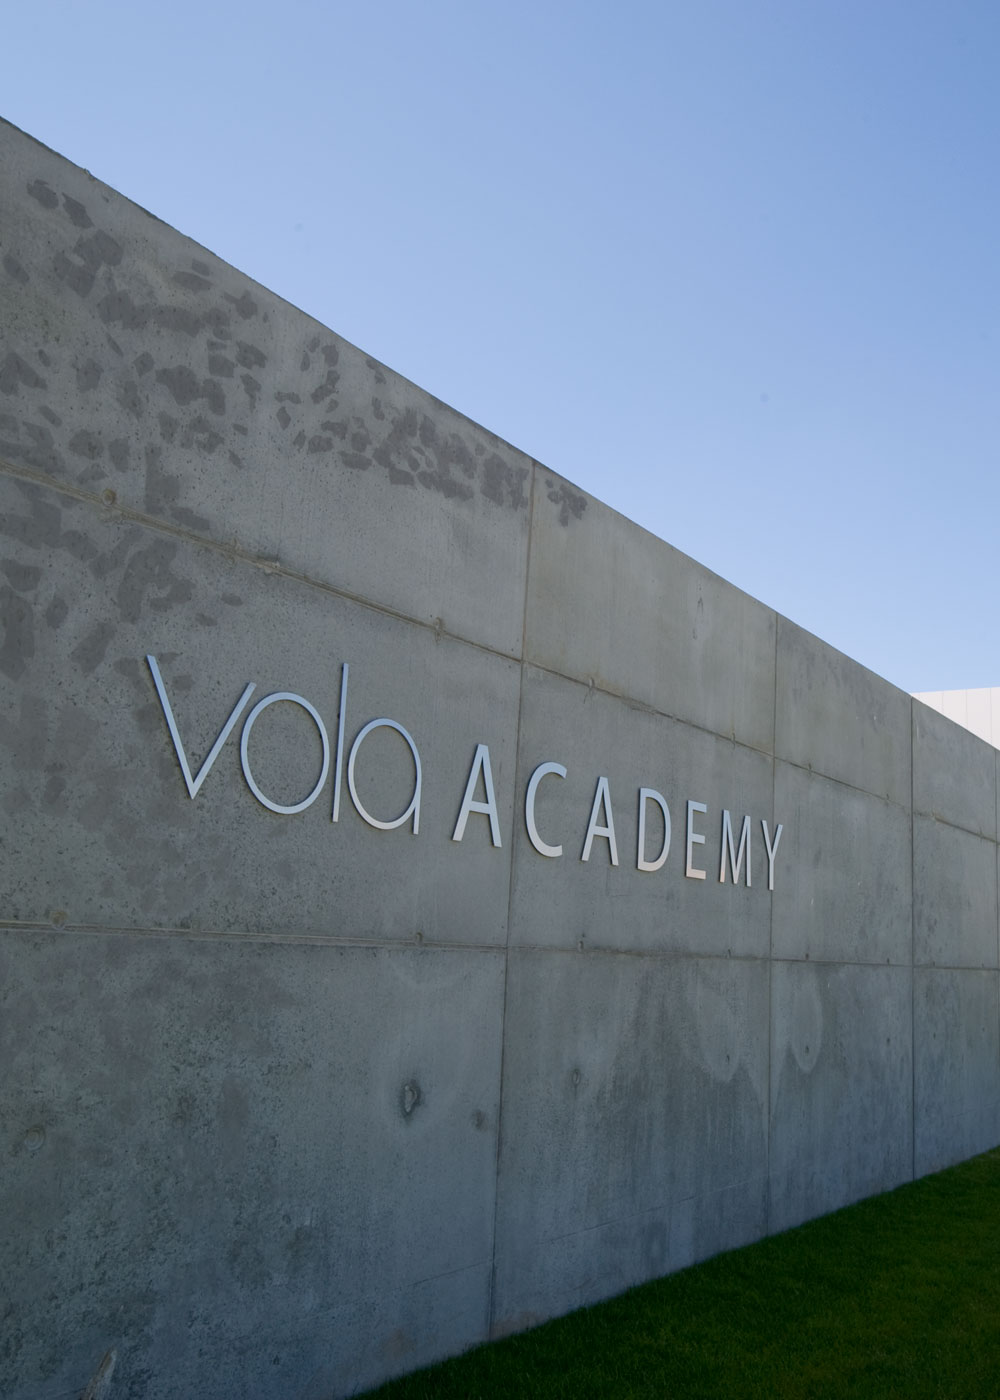 VOLA Academy